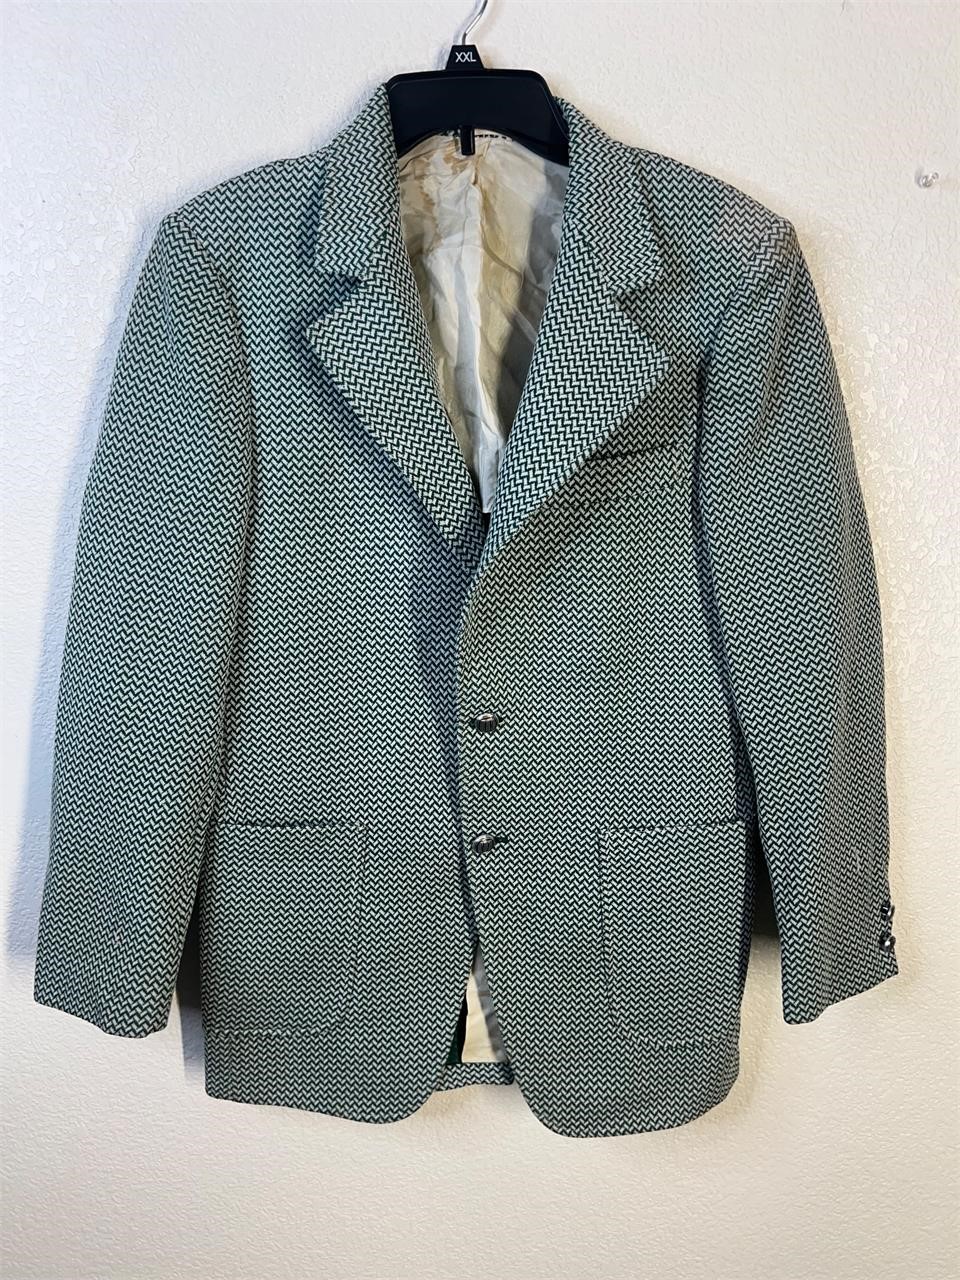 Vintage 70s Green Houndstooth Jacket